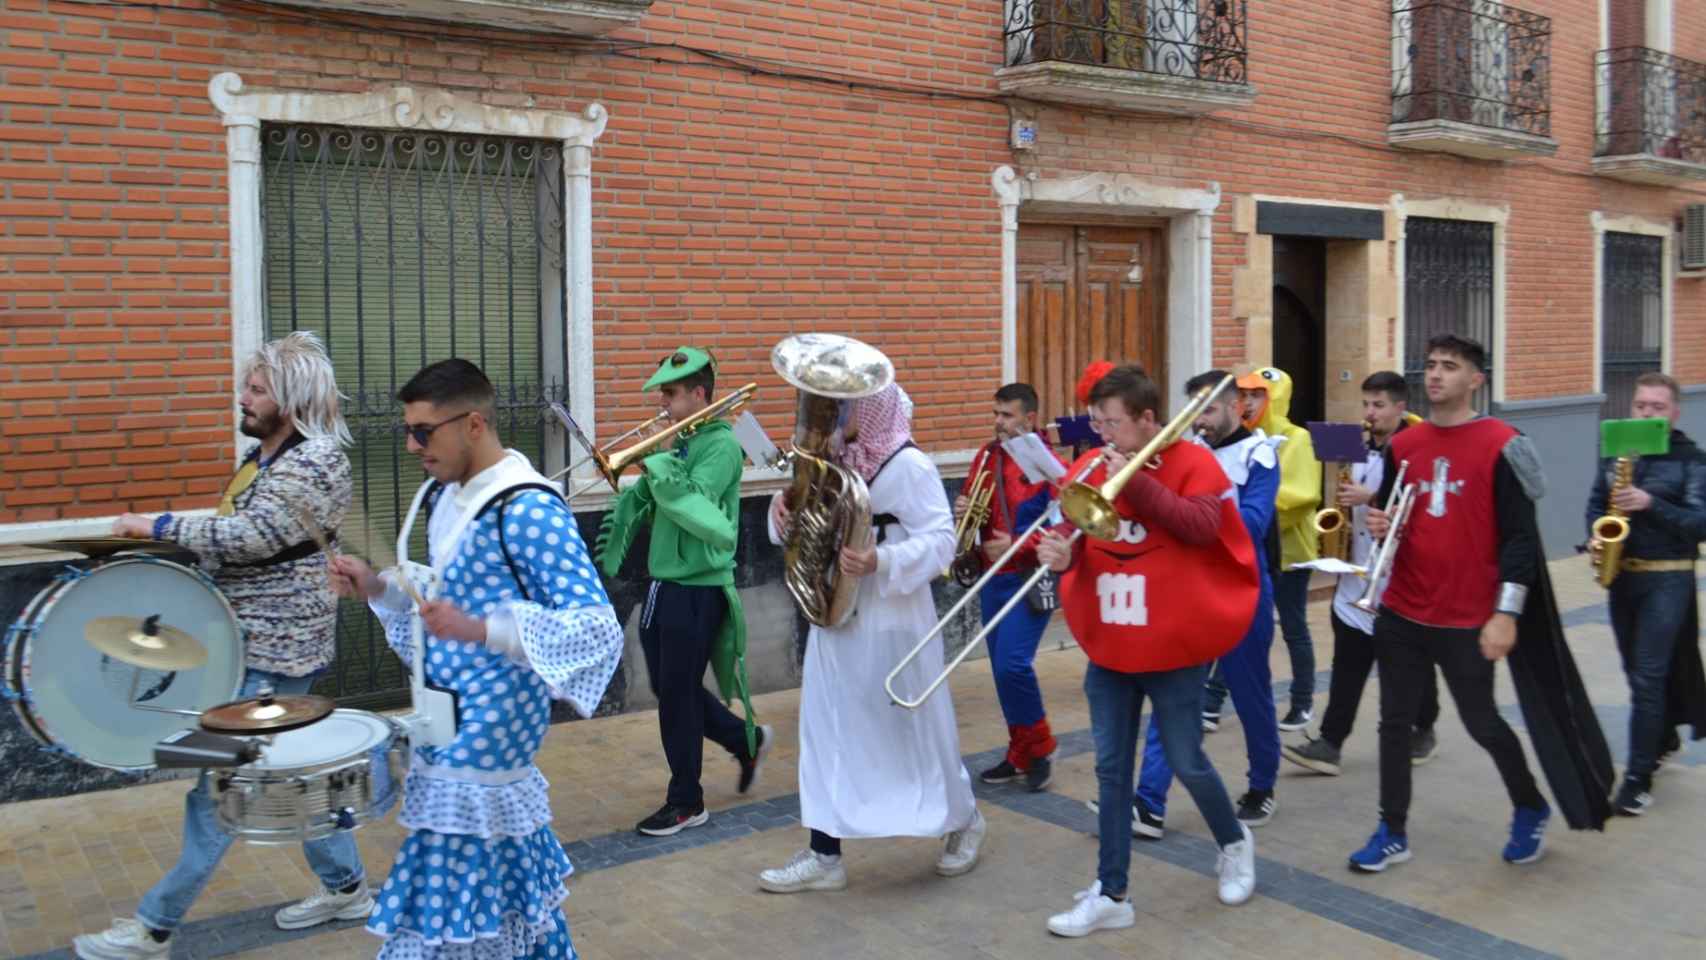 Carnaval de Miguel Esteban (Toledo)